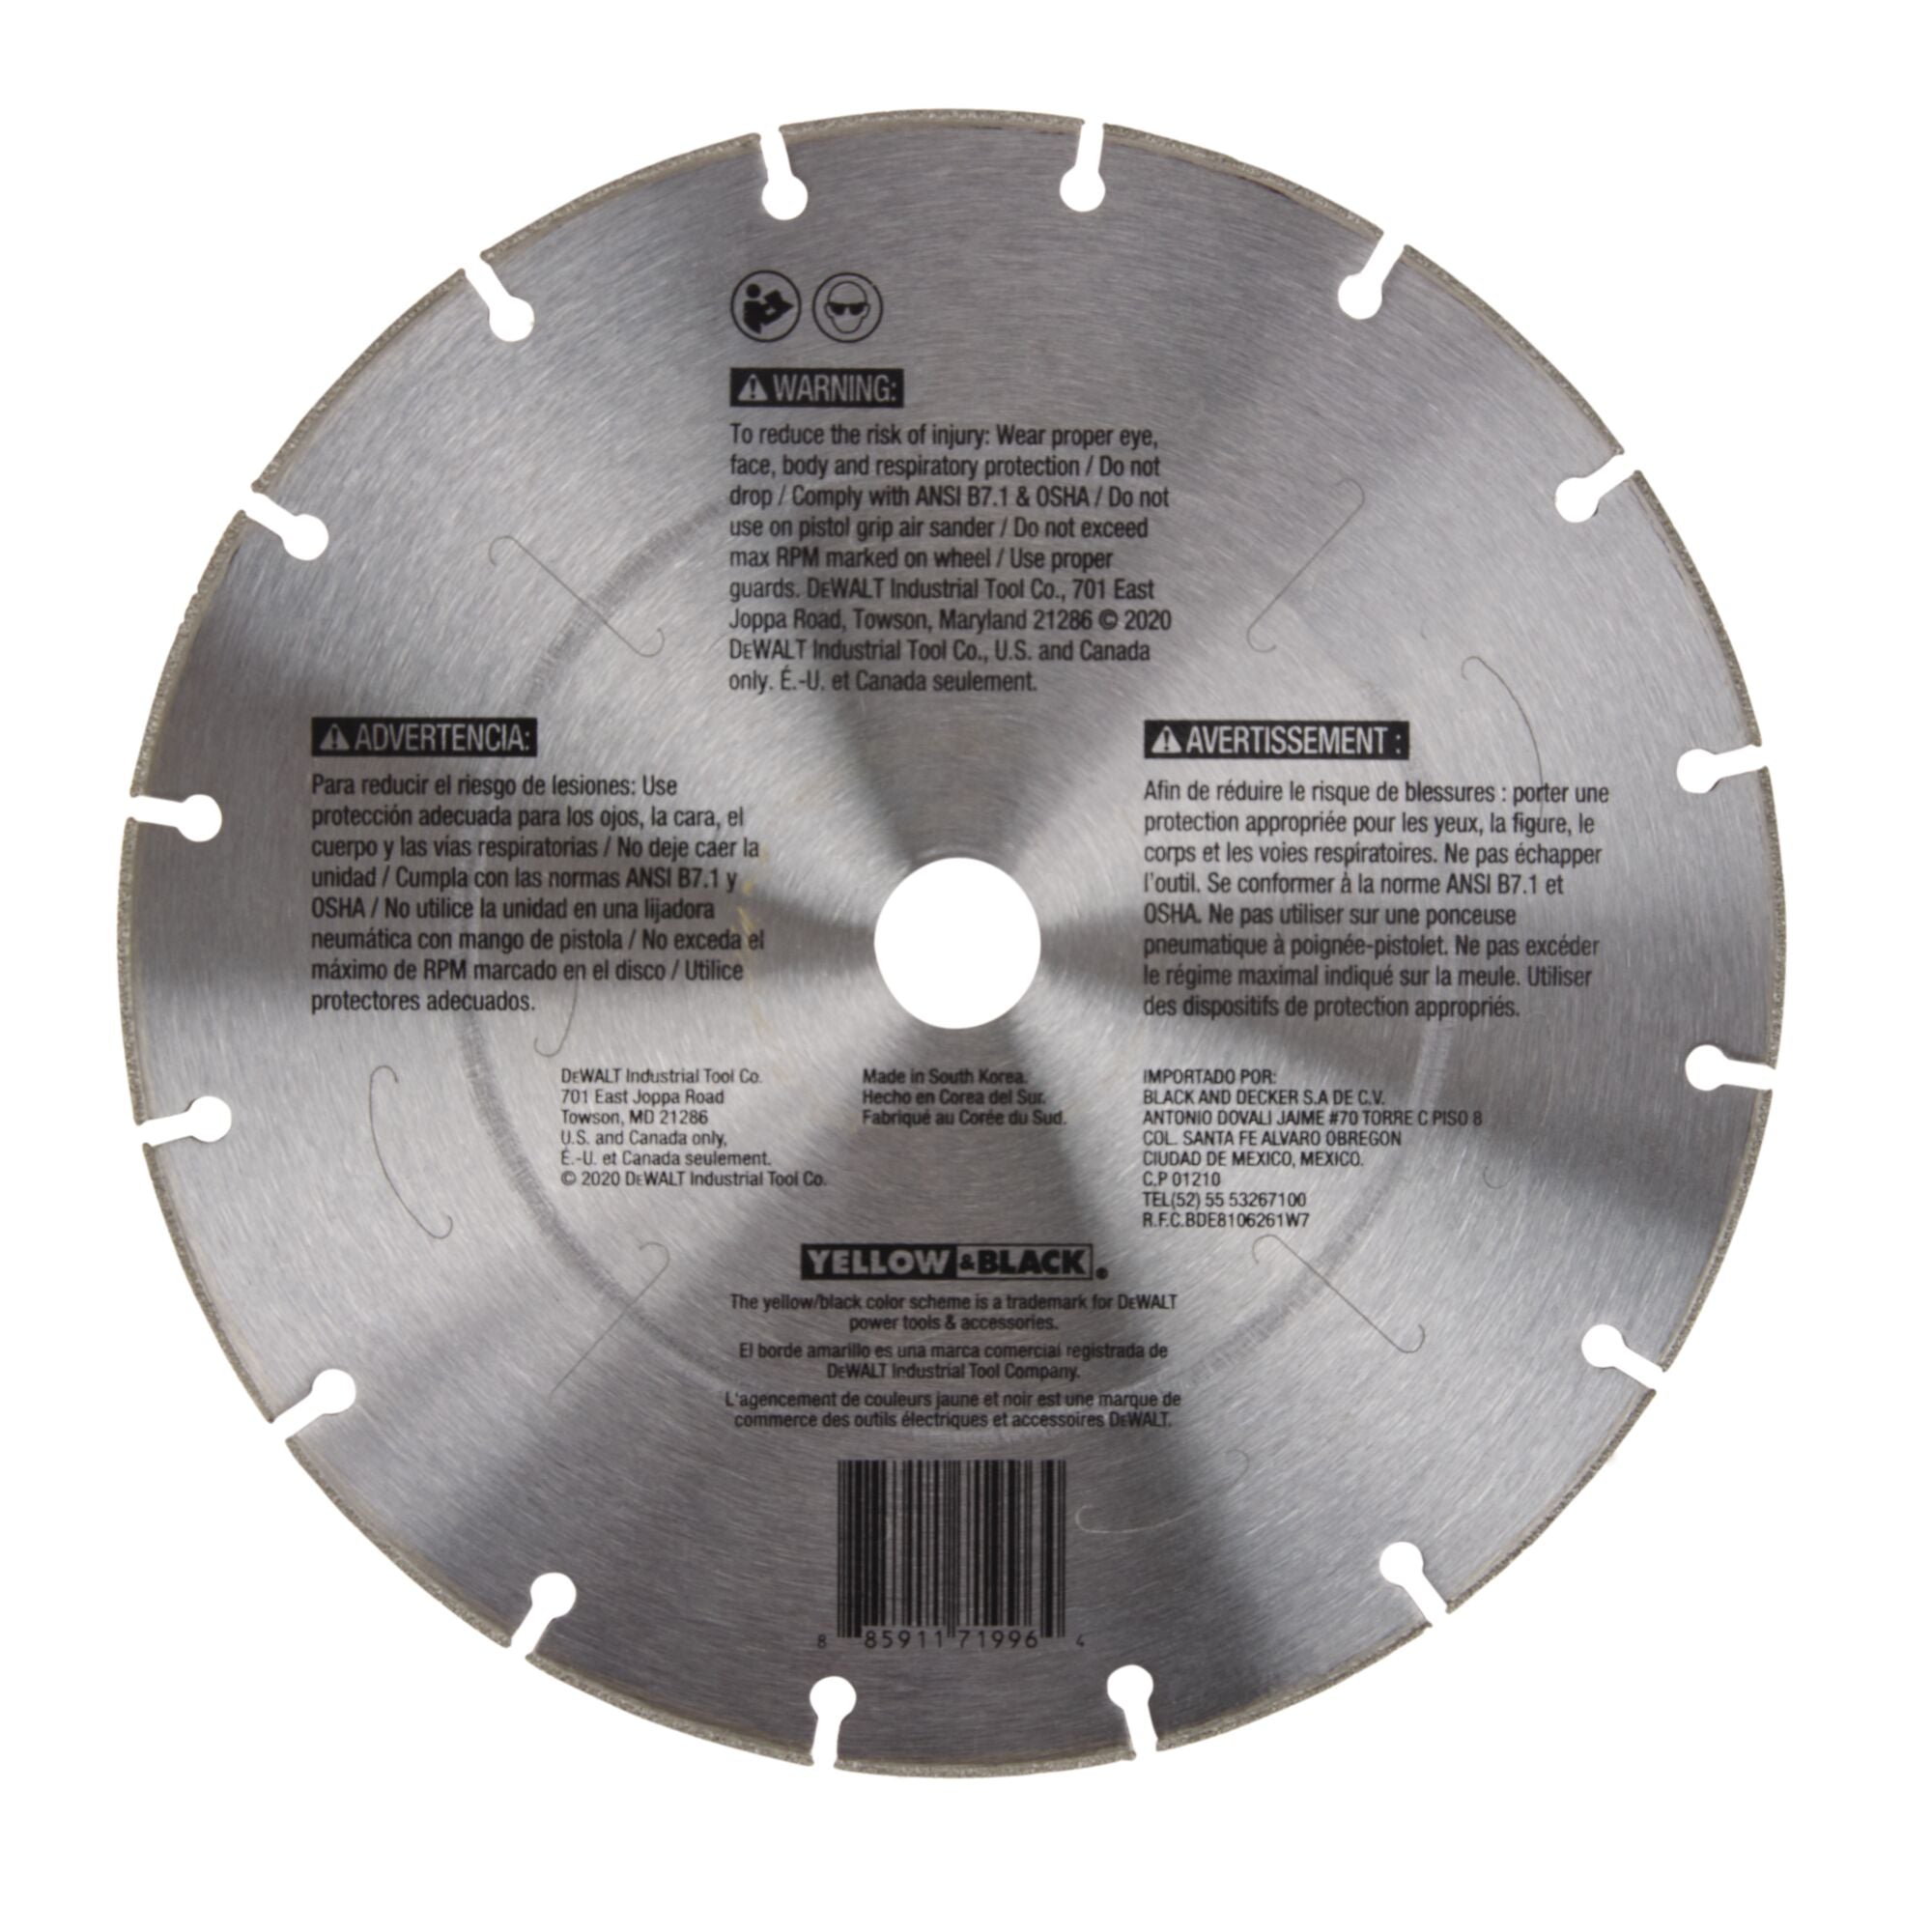 DeWALT DWAFV8901 9" Diamond Cutting Wheel for Metal for DCS690 Saw